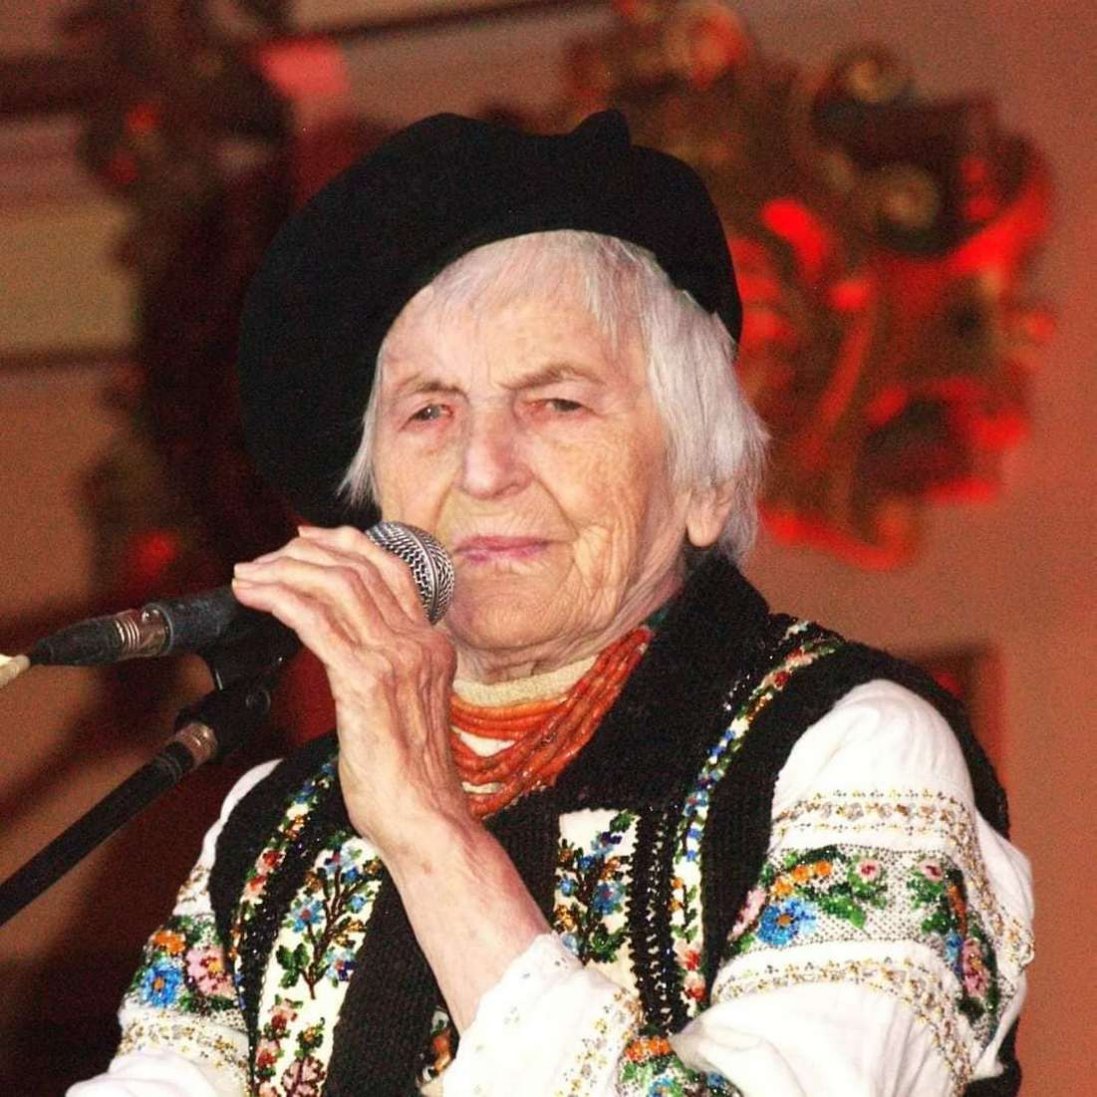 На 102 році життя померла зв'язкова Романа Шухевича